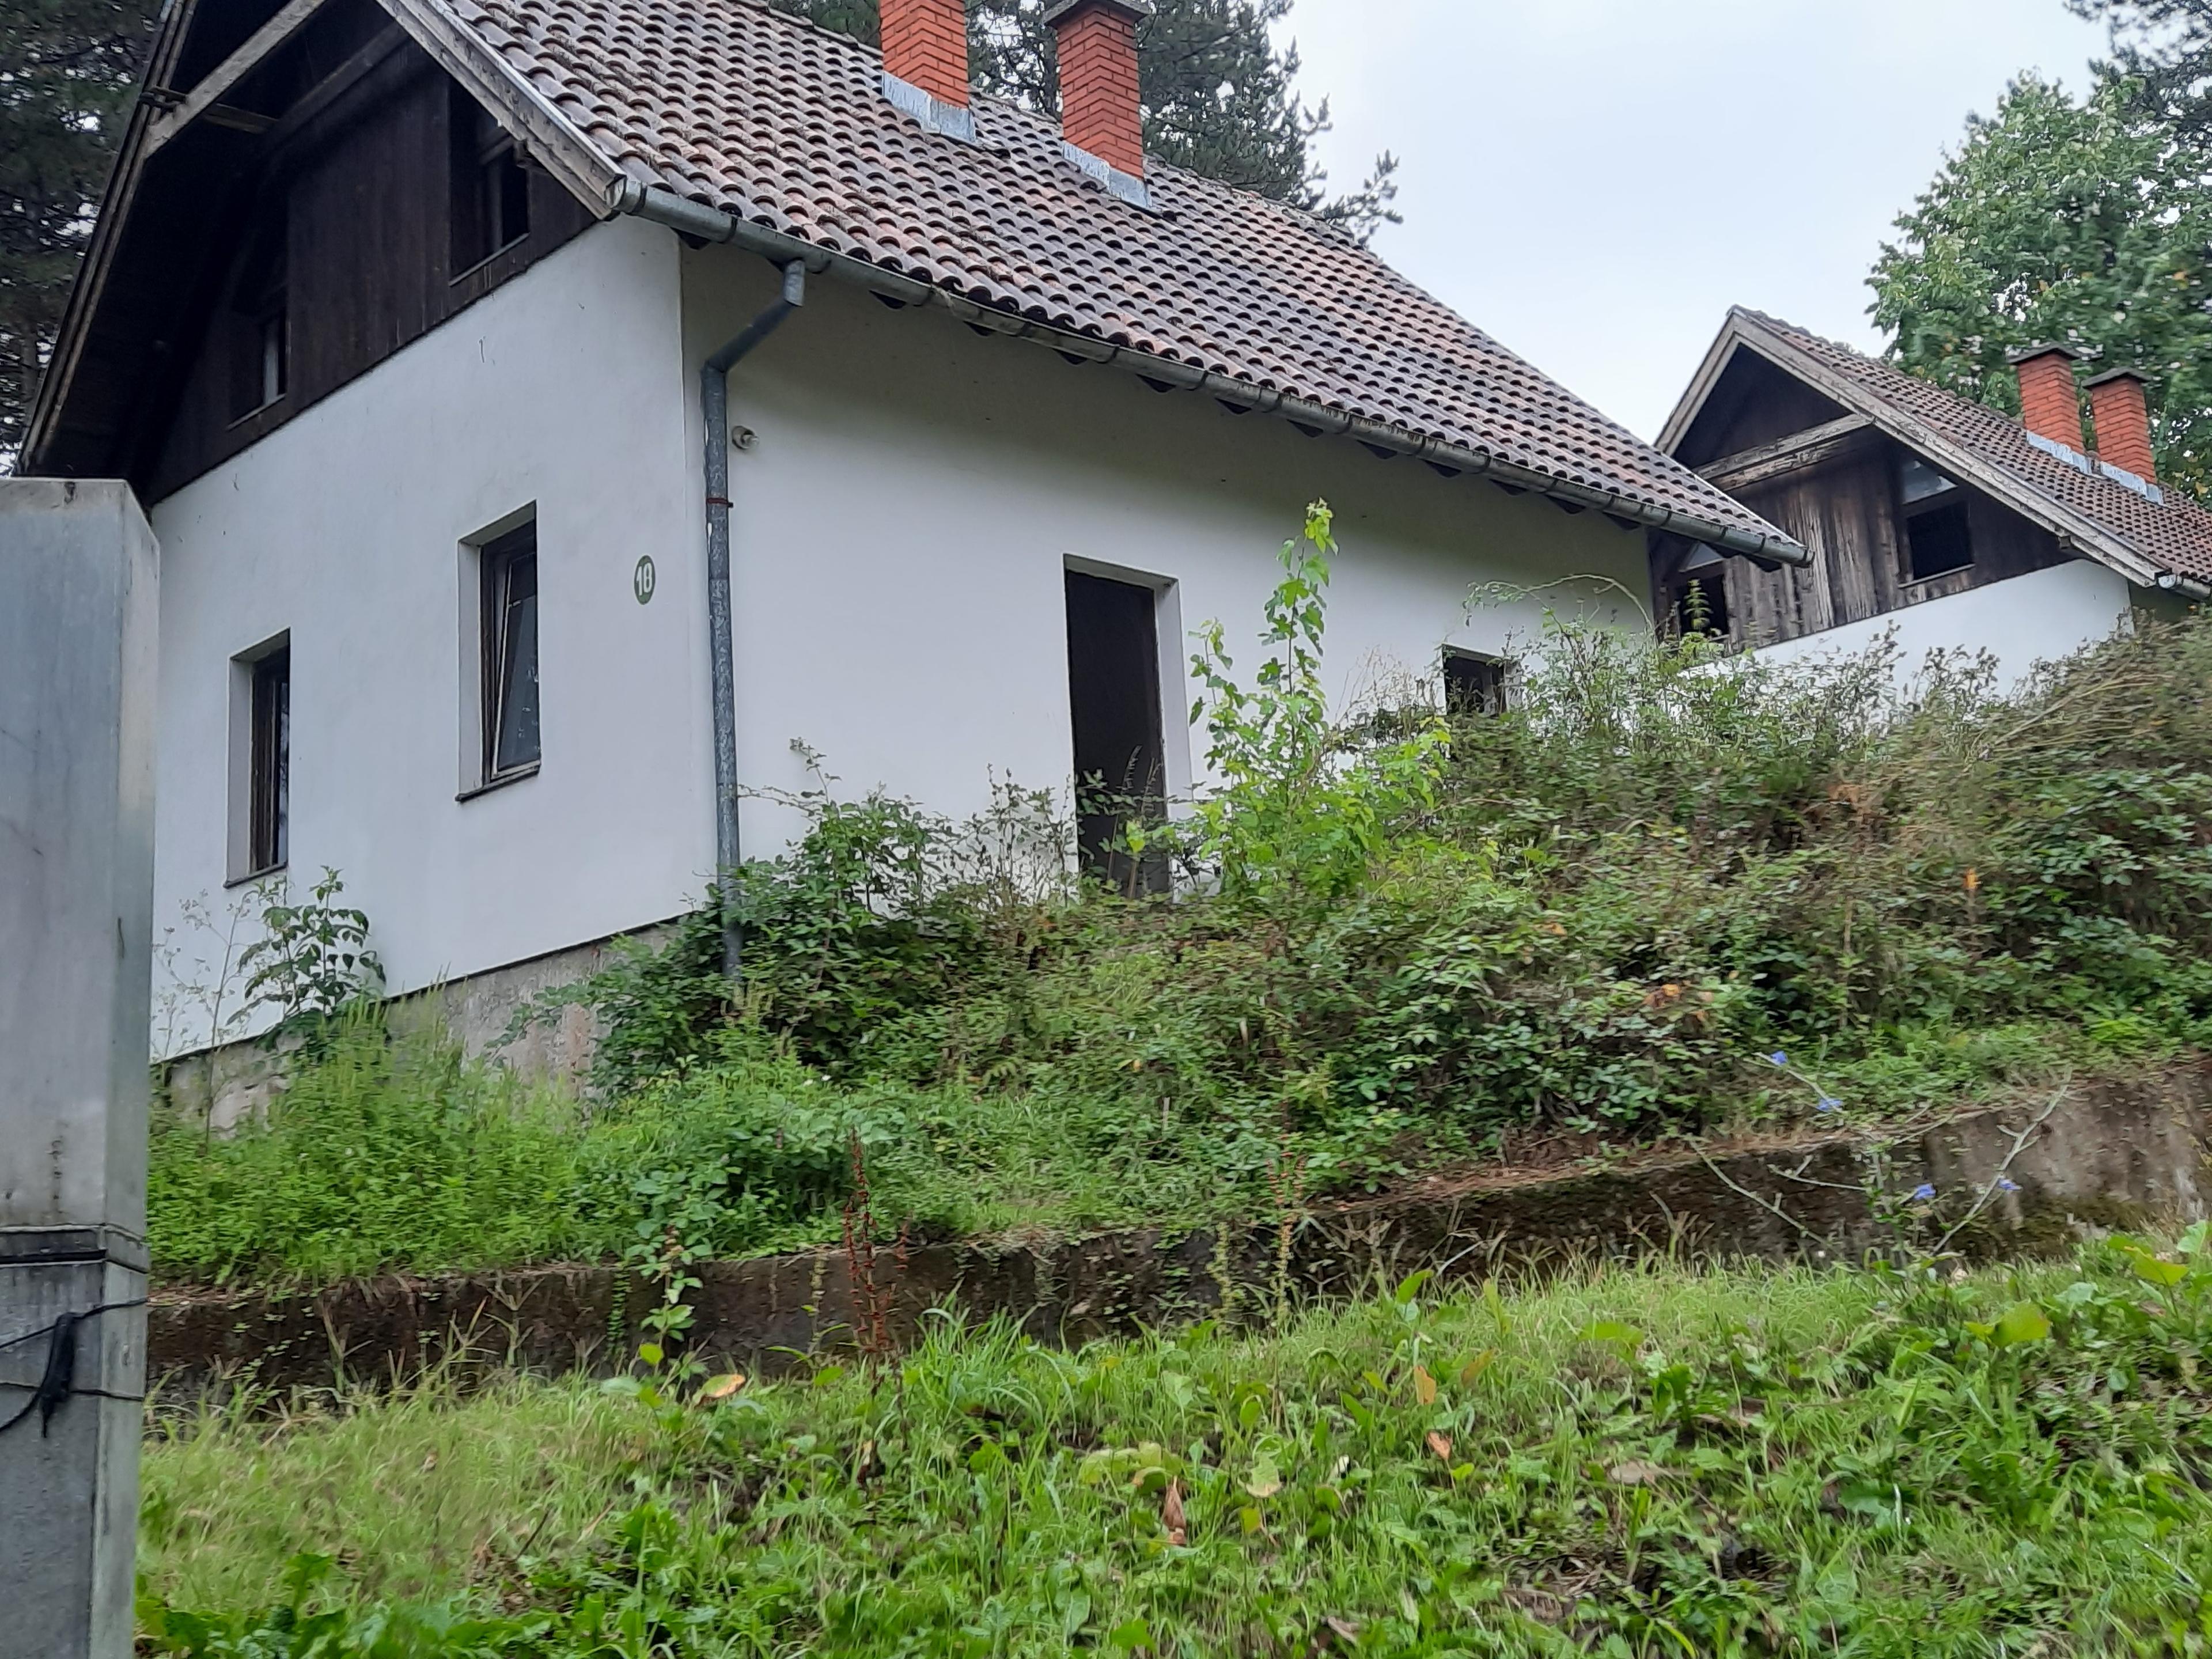 Šesnaest napuštenih i devastiranih kuća u naselju - Avaz